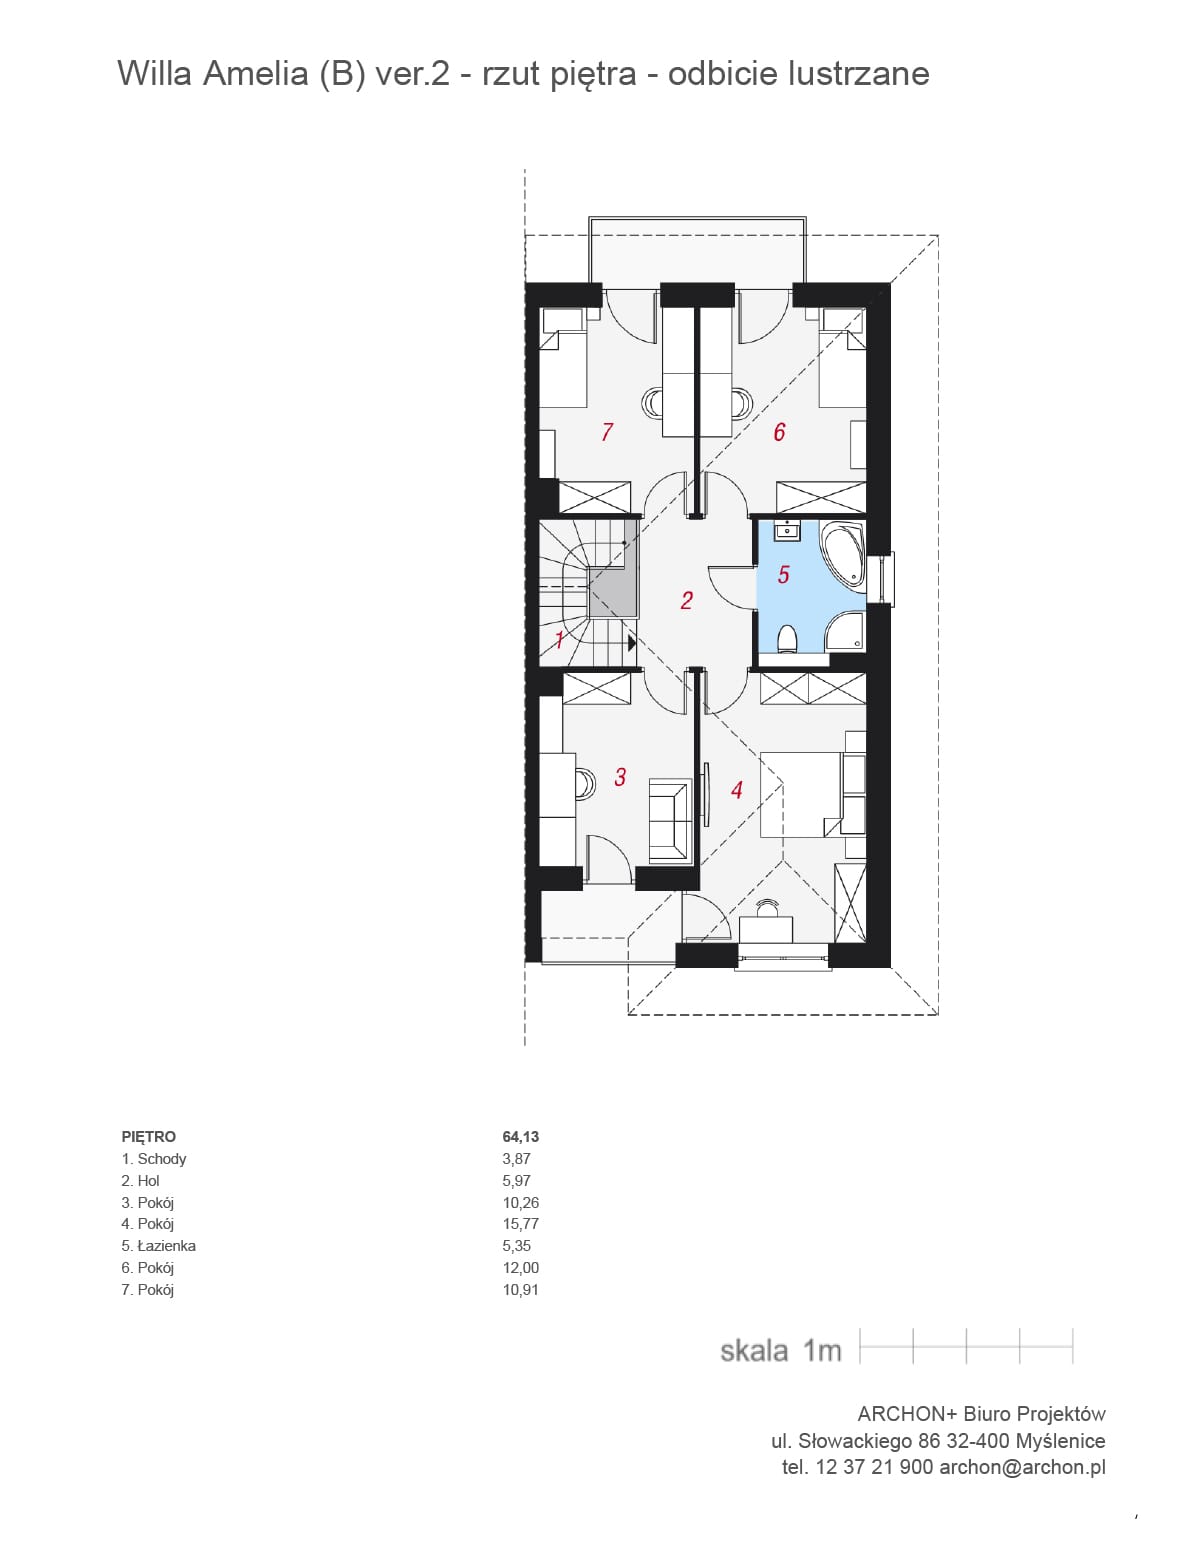 Rzut - Piętro (64.11 m2)